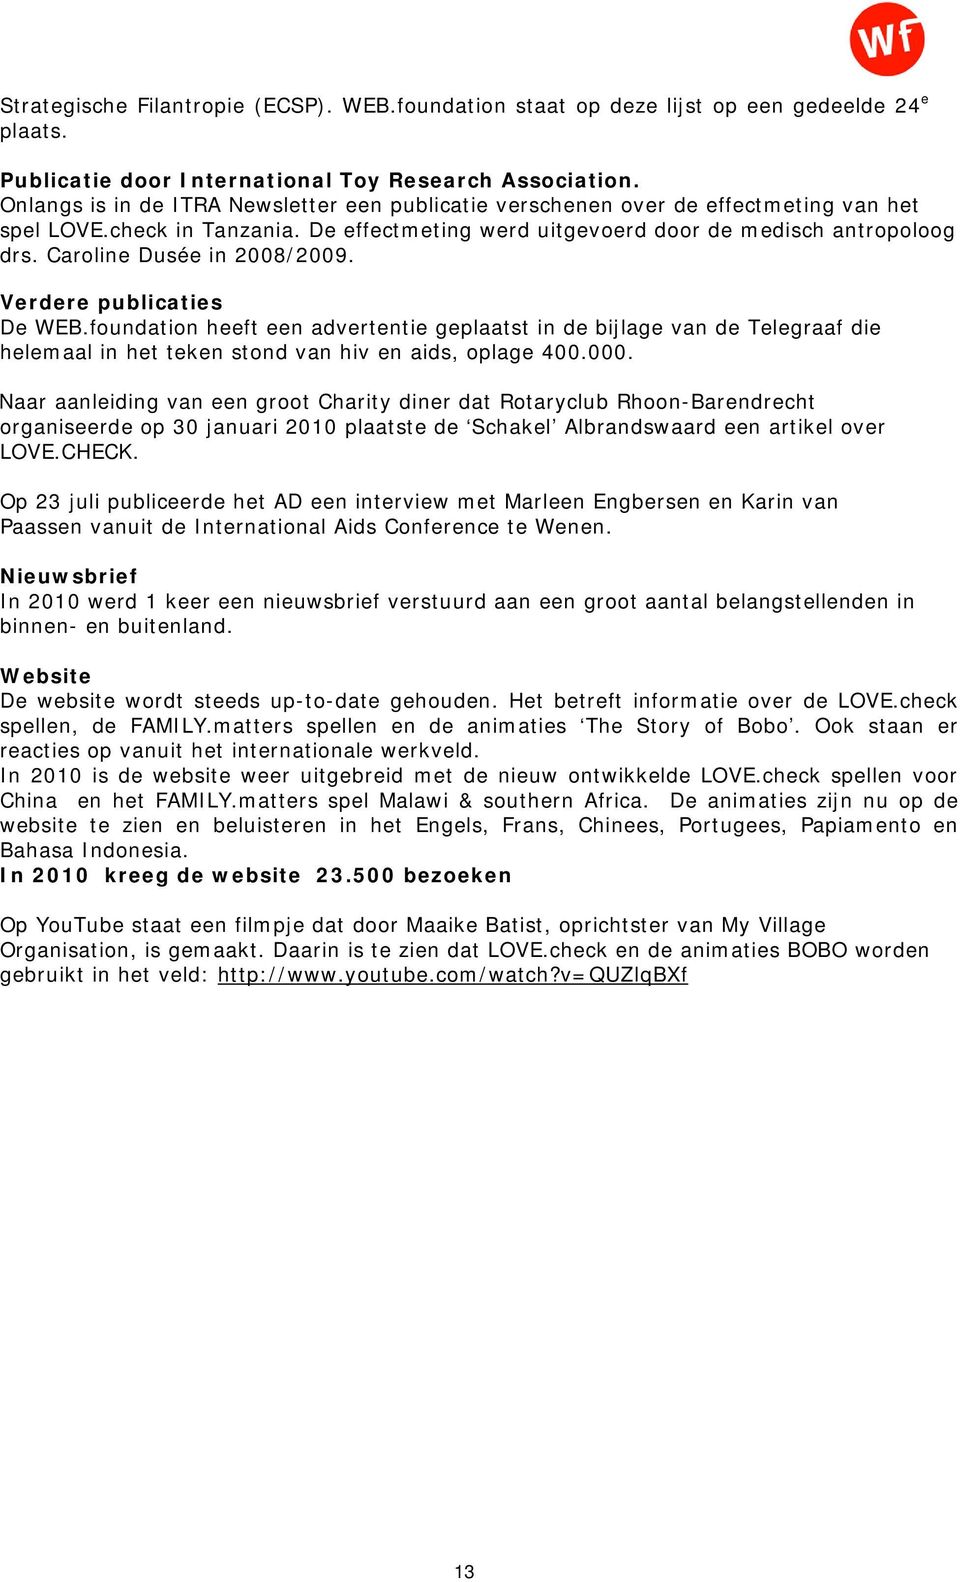 Caroline Dusée in 2008/2009. Verdere publicaties De WEB.foundation heeft een advertentie geplaatst in de bijlage van de Telegraaf die helemaal in het teken stond van hiv en aids, oplage 400.000.